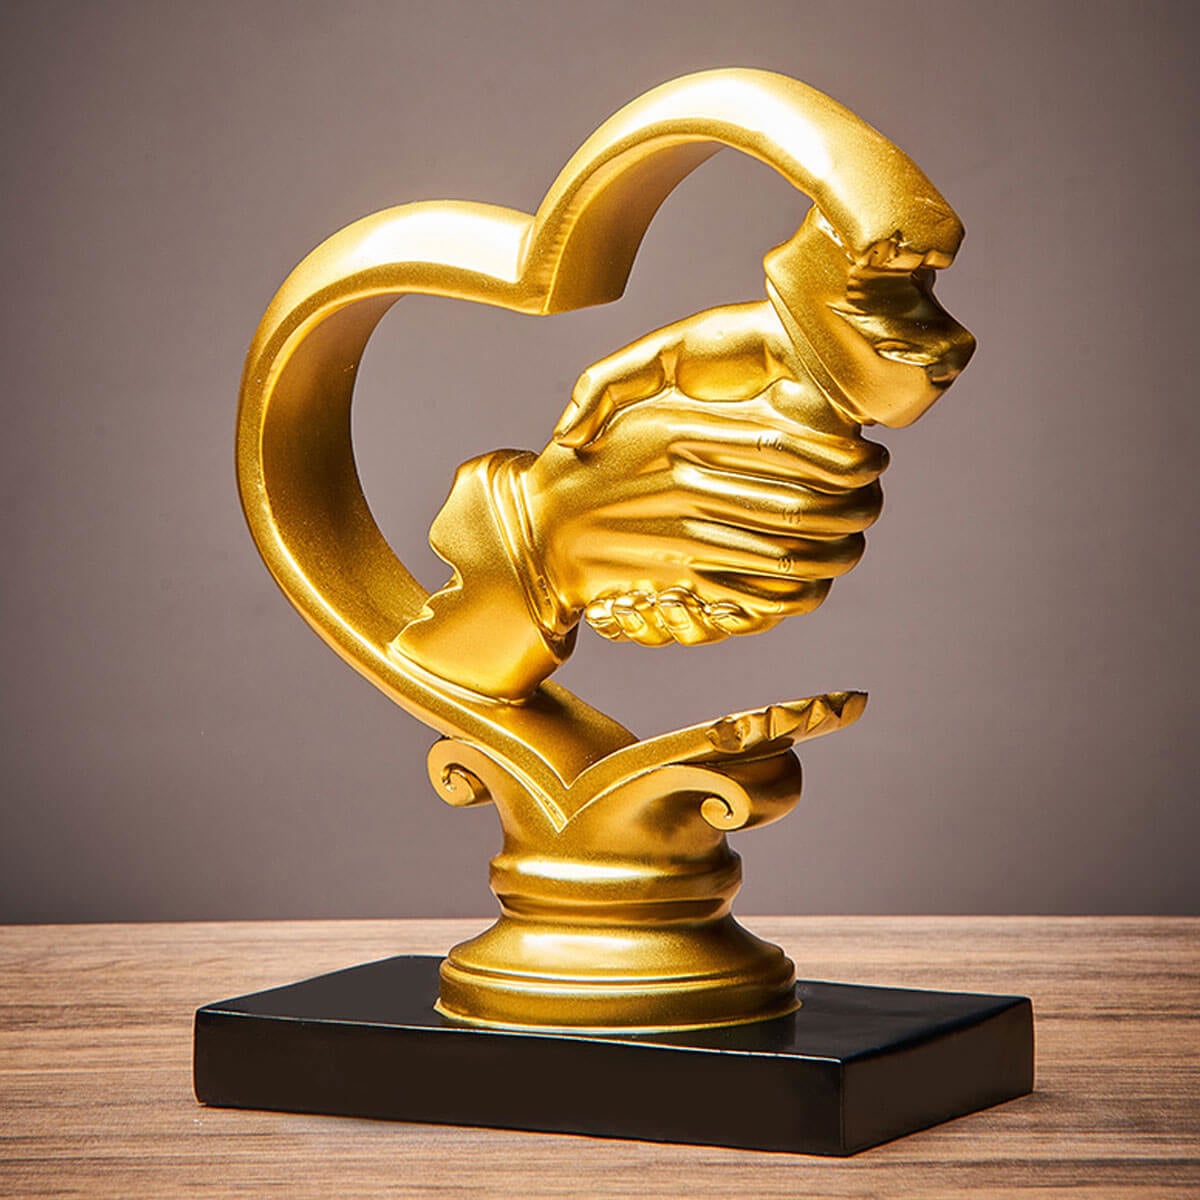 Golden Handshake Sculpture - Symbol of Partnership